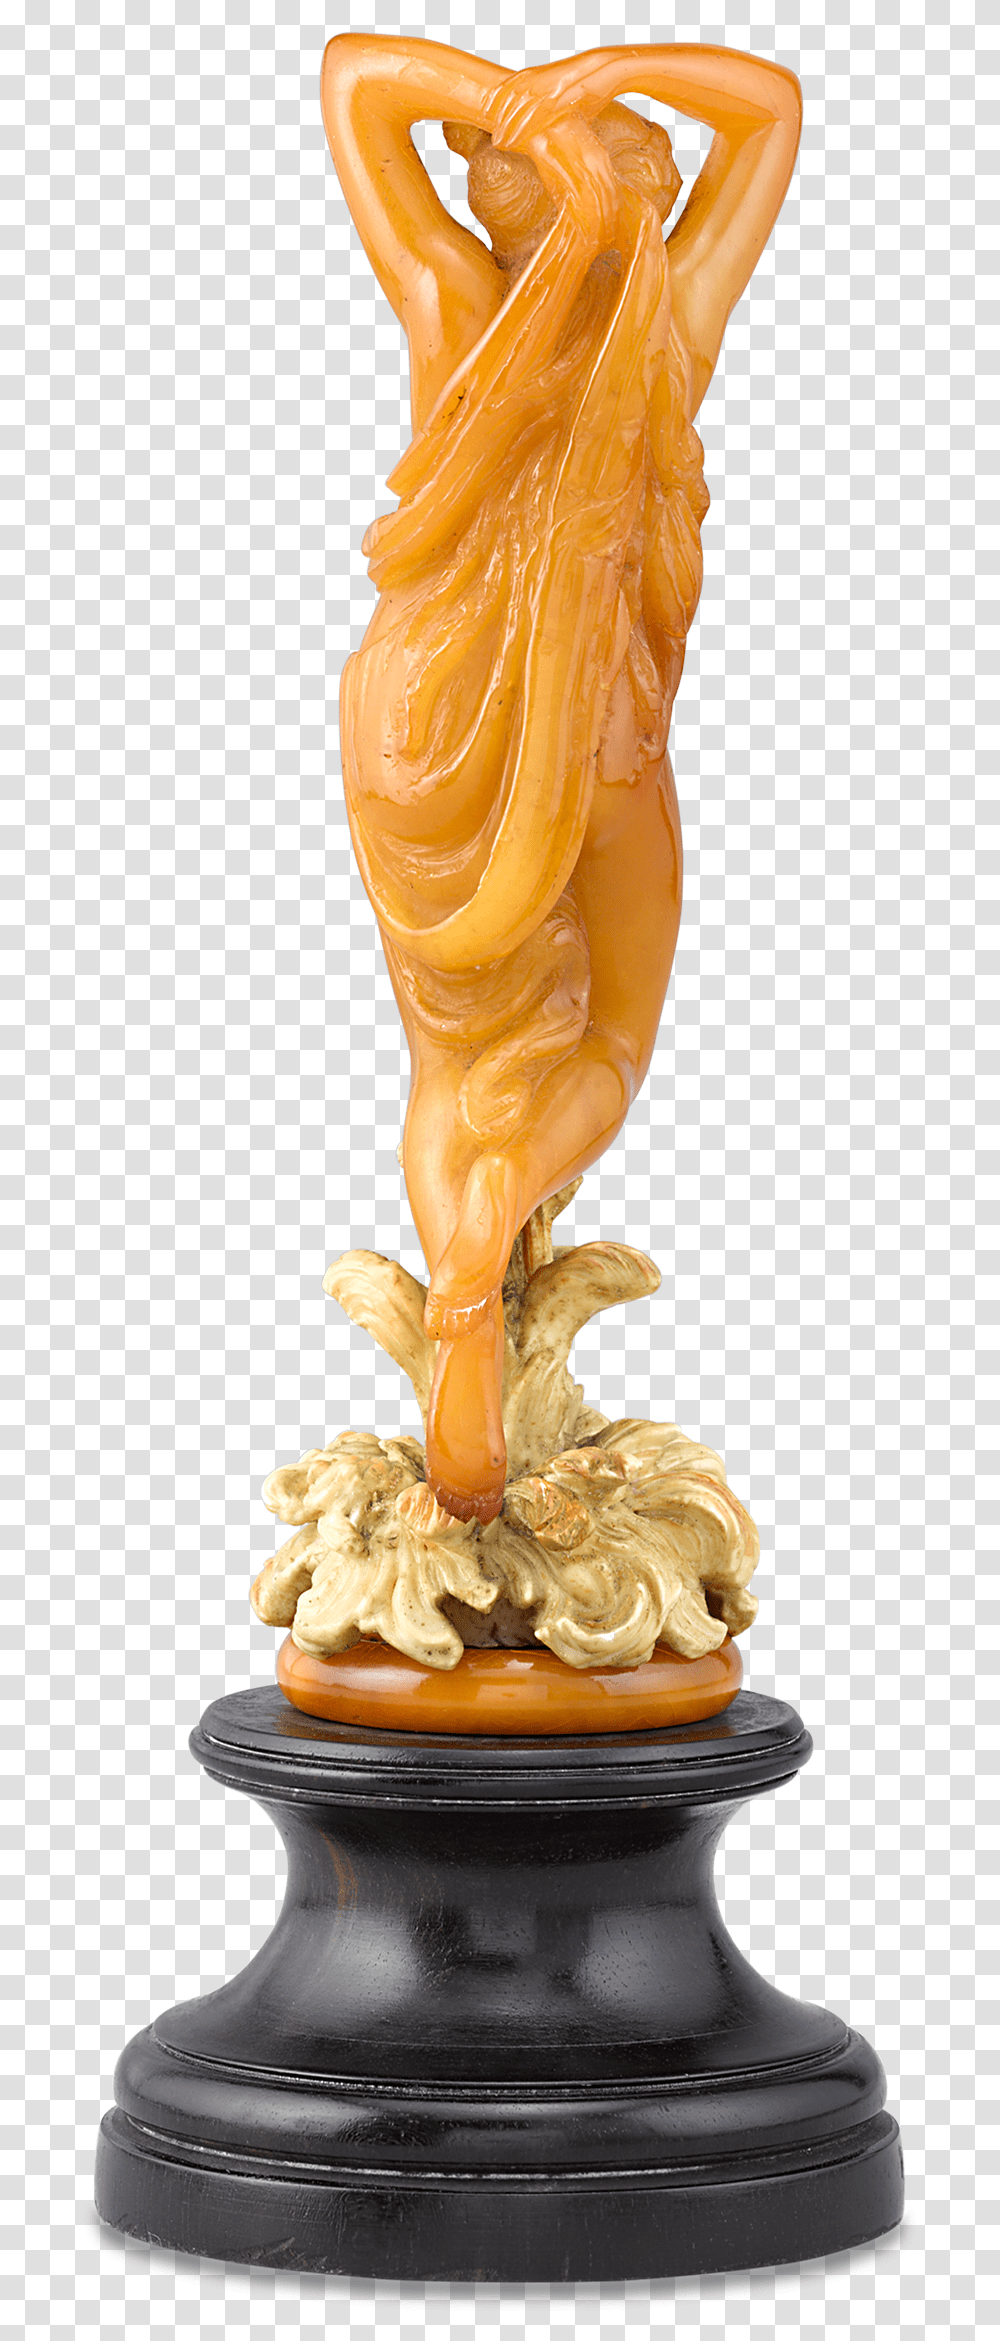 European Art Nouveau Amber Nymph Statuette Statue, Plant, Wedding Cake, Dessert, Food Transparent Png